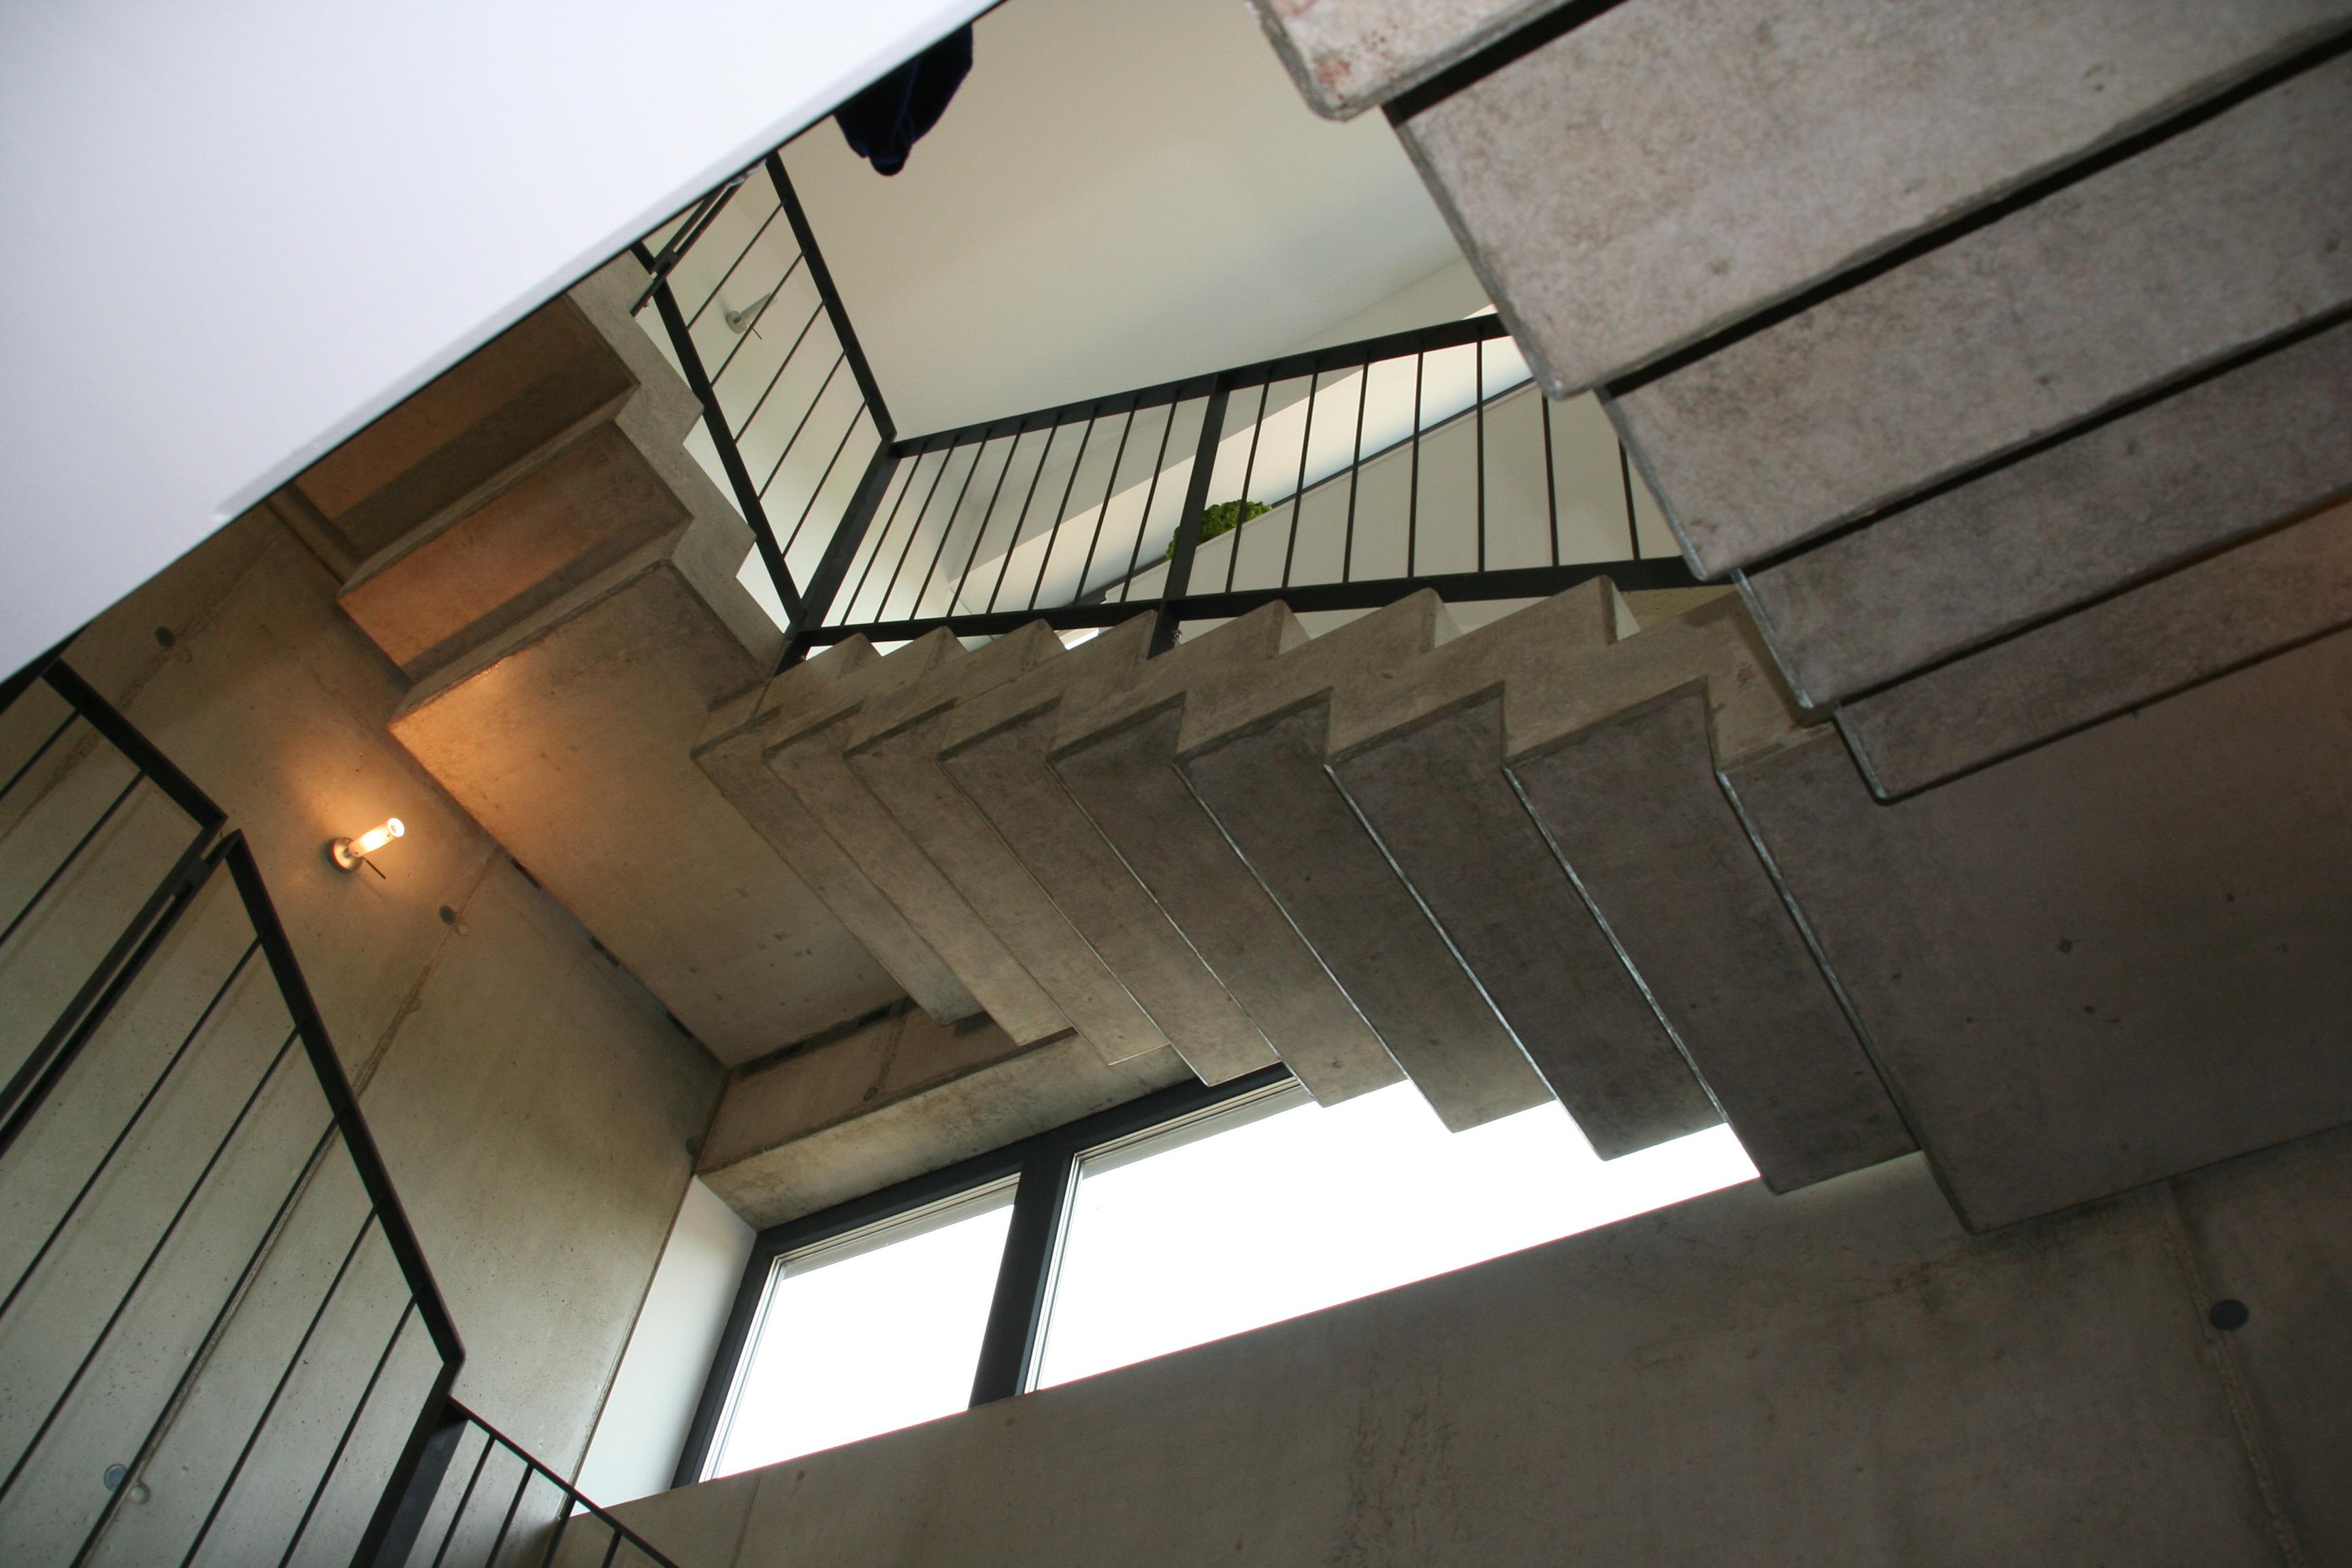 Neubau eines Mehrfamilienhauses auf zwei oberirdischen Geschossen sowie Unterbau mit Hausfoyer und G #betontreppe ©wagner+ GbR